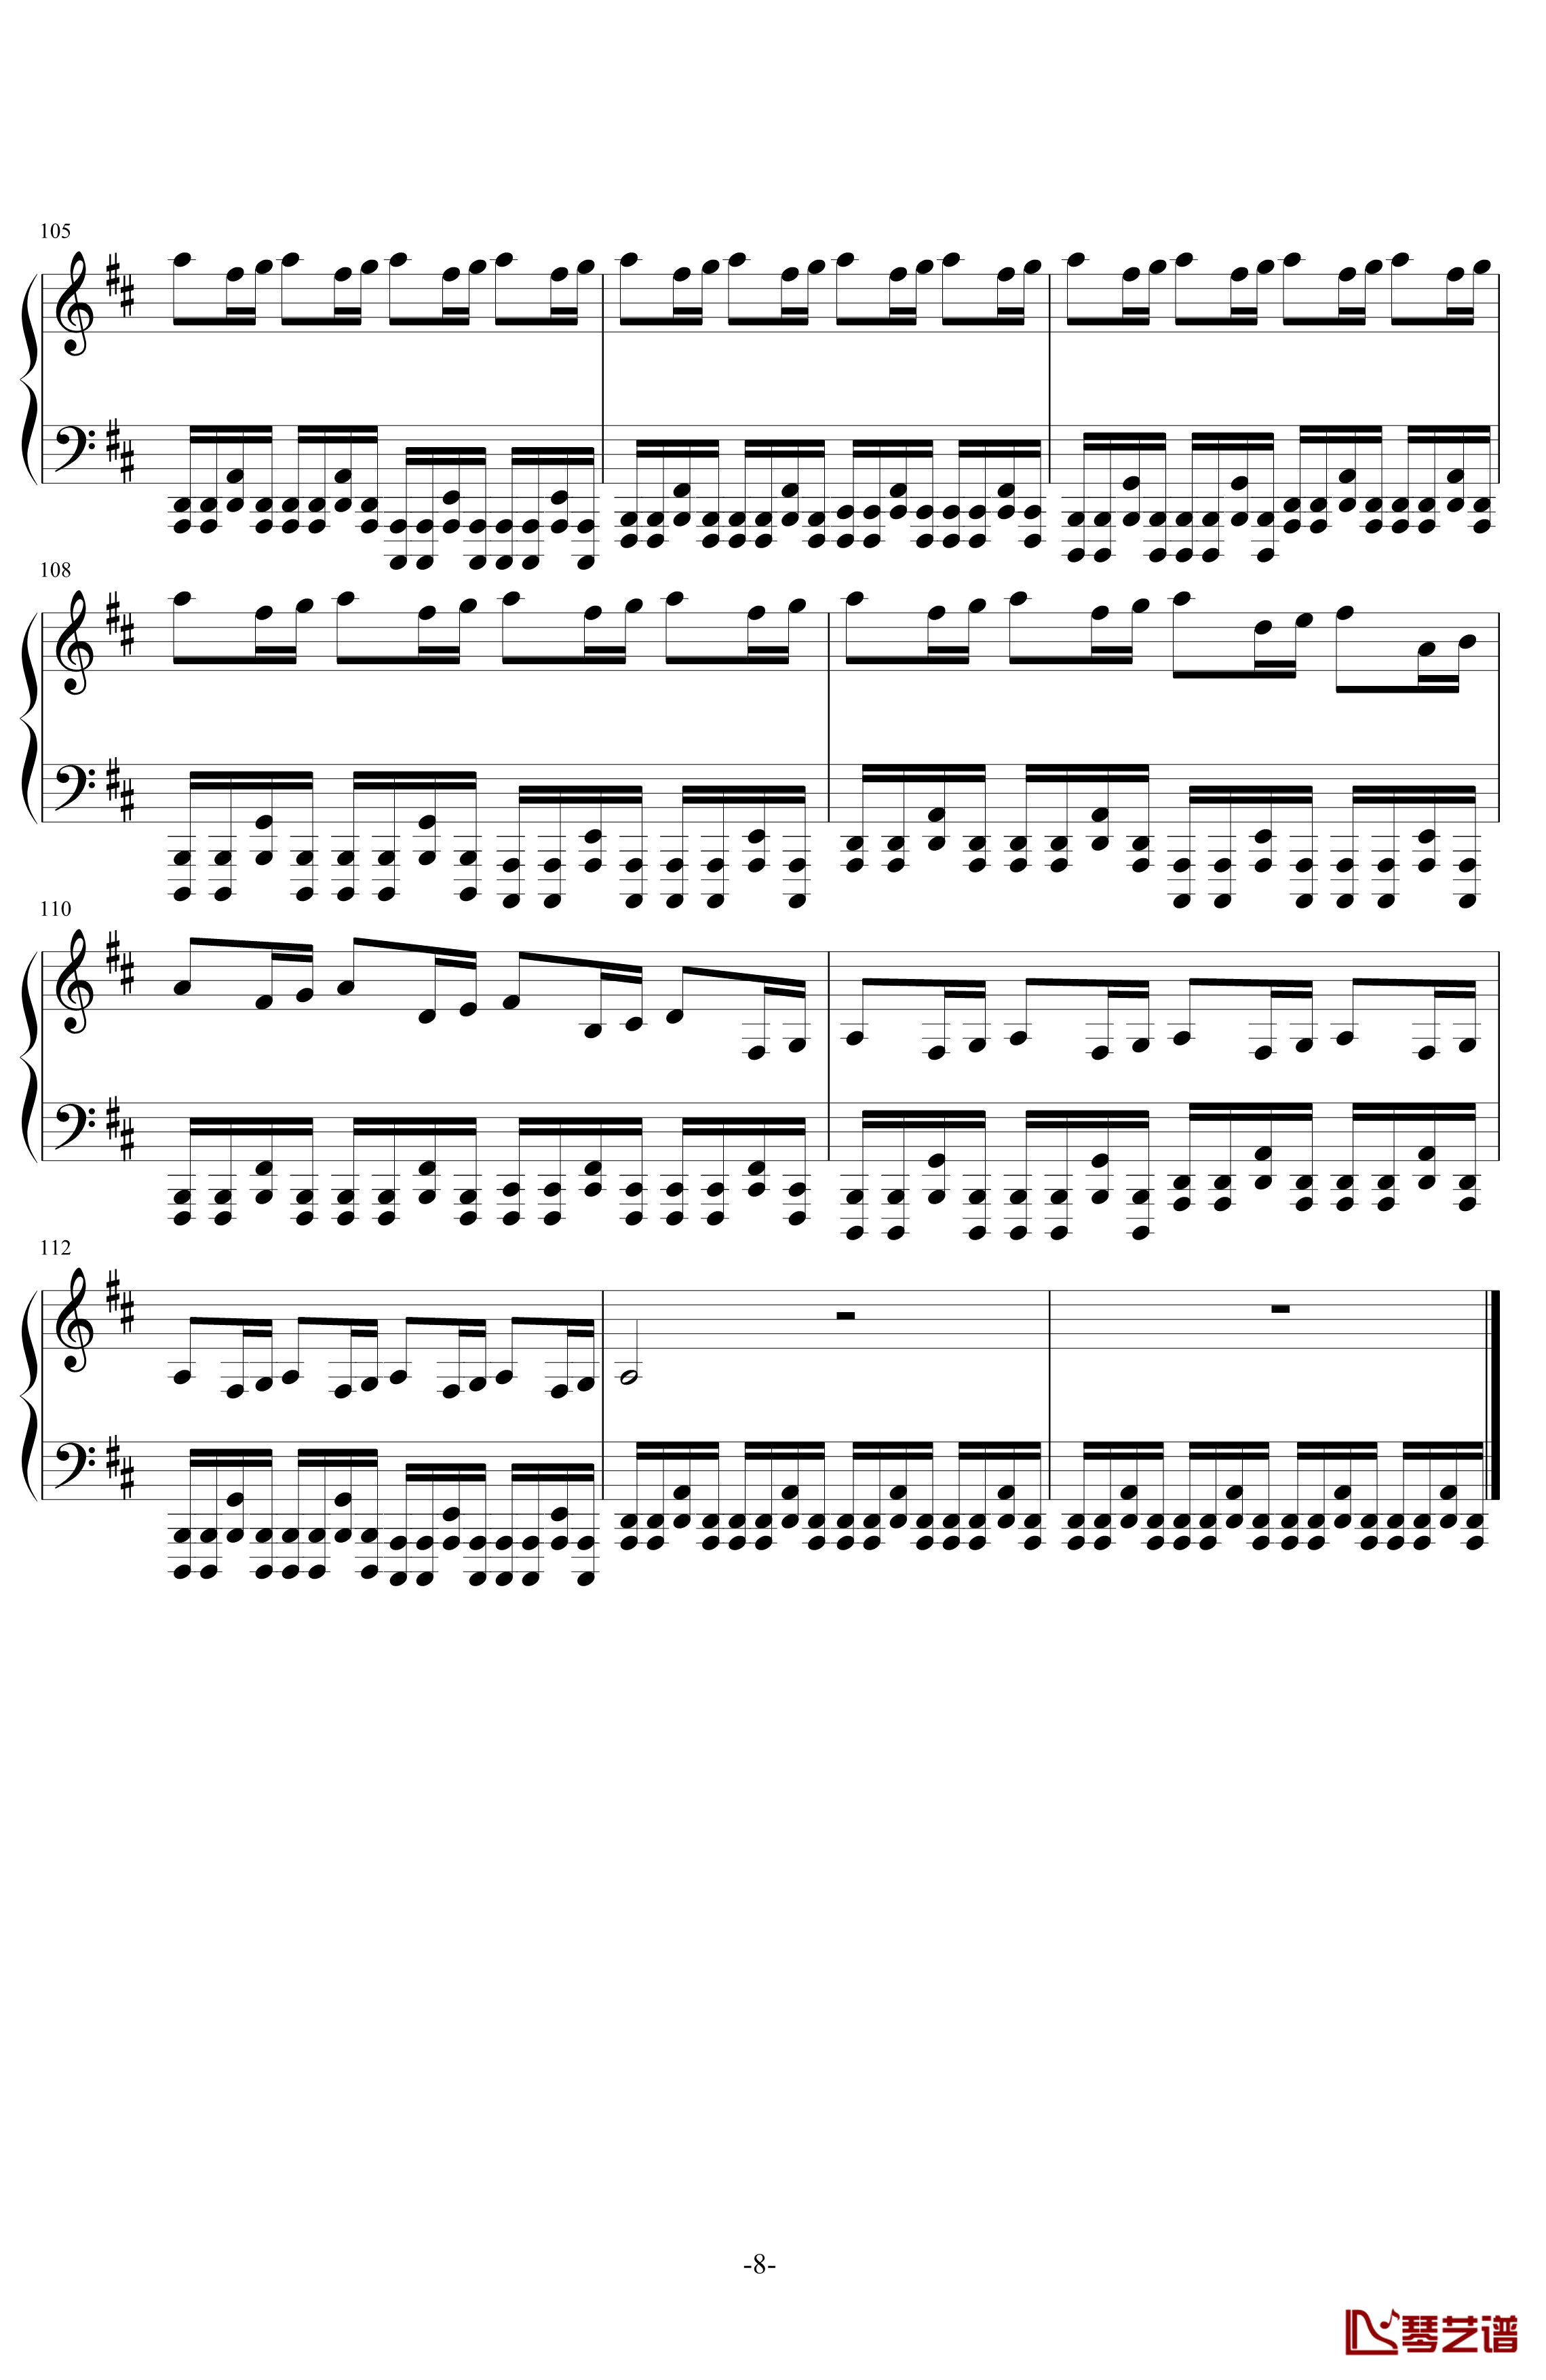 卡农钢琴谱-帕赫贝尔-Pachelbel-钢琴版摇滚8